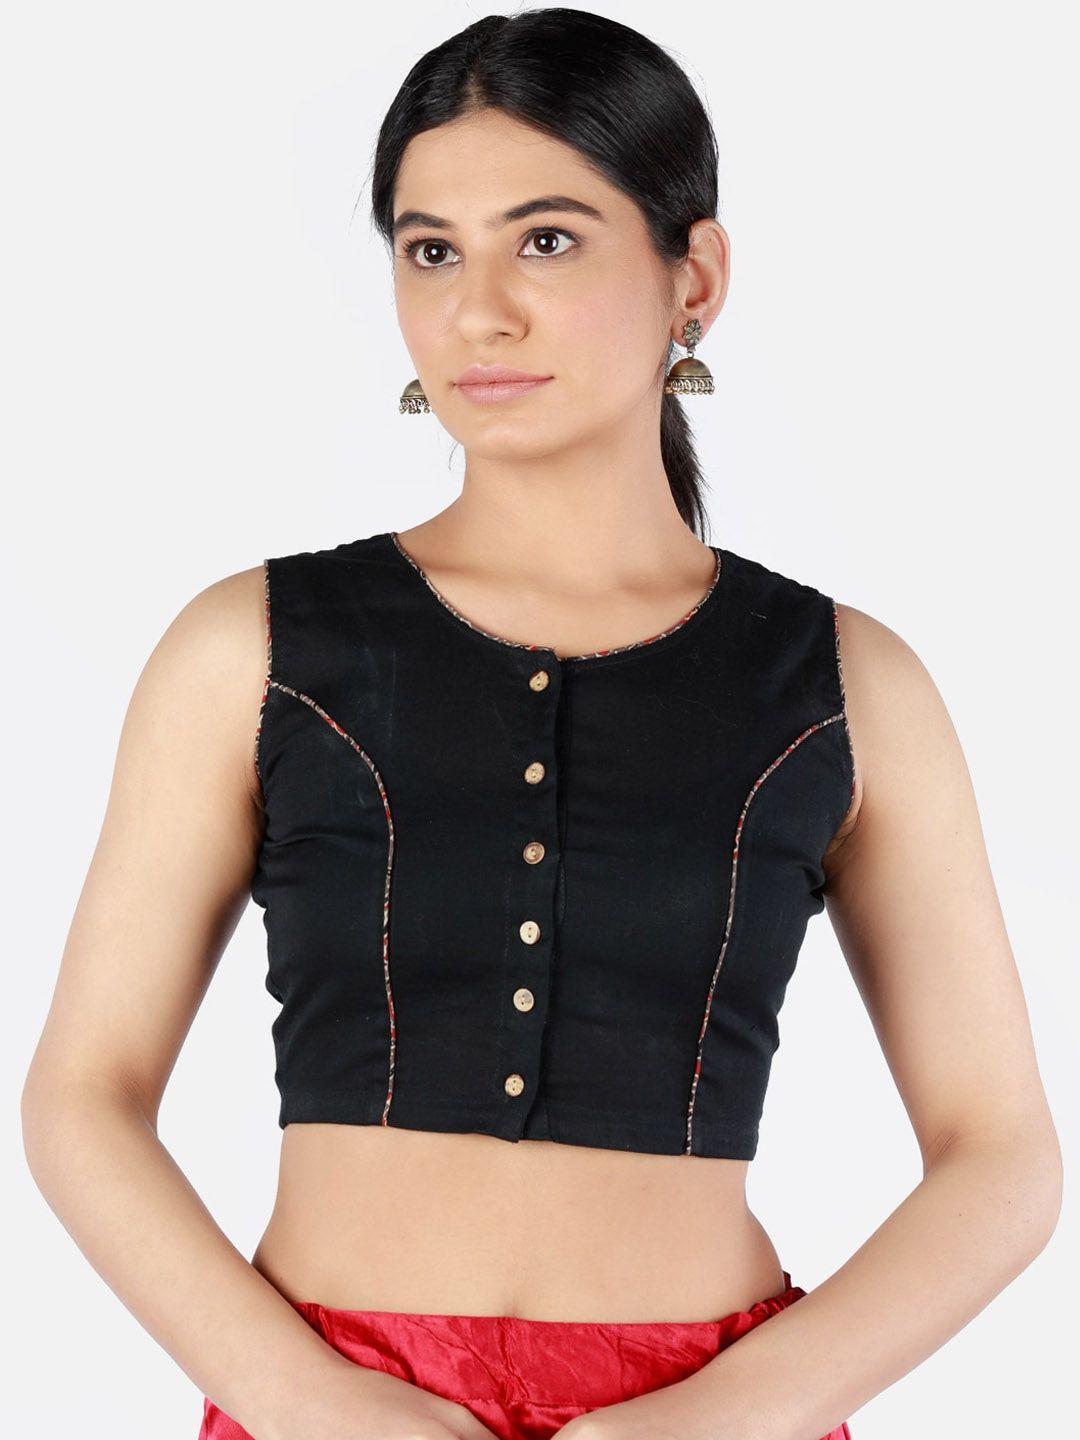 llajja women black solid cotton  sustainable saree blouse